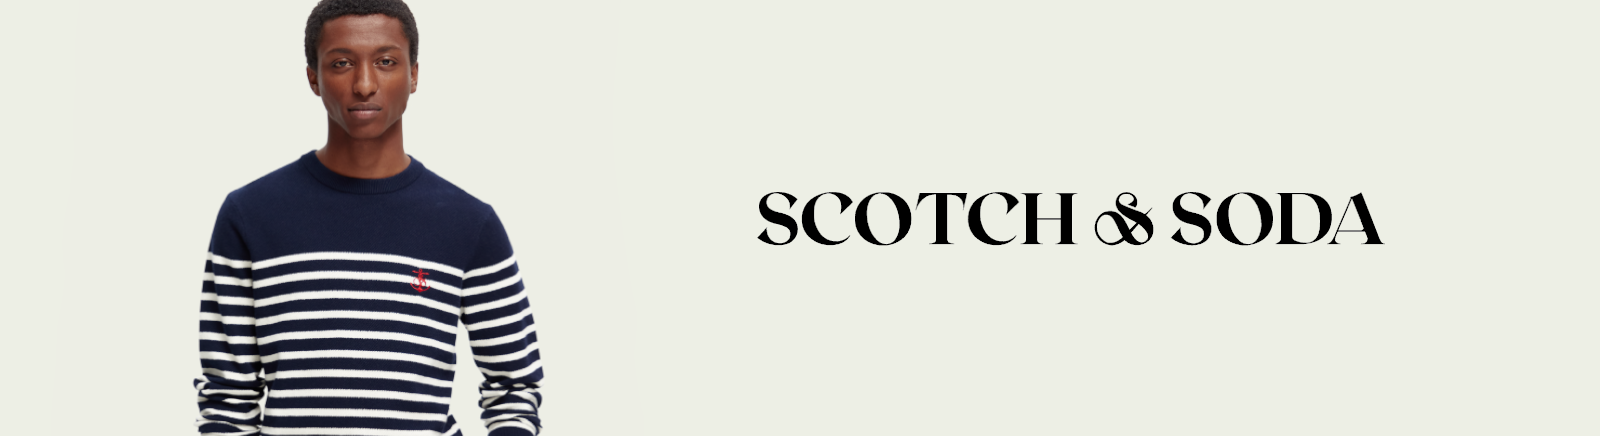 Juppen: Scotch & Soda Boots für Damen kaufen online shoppen